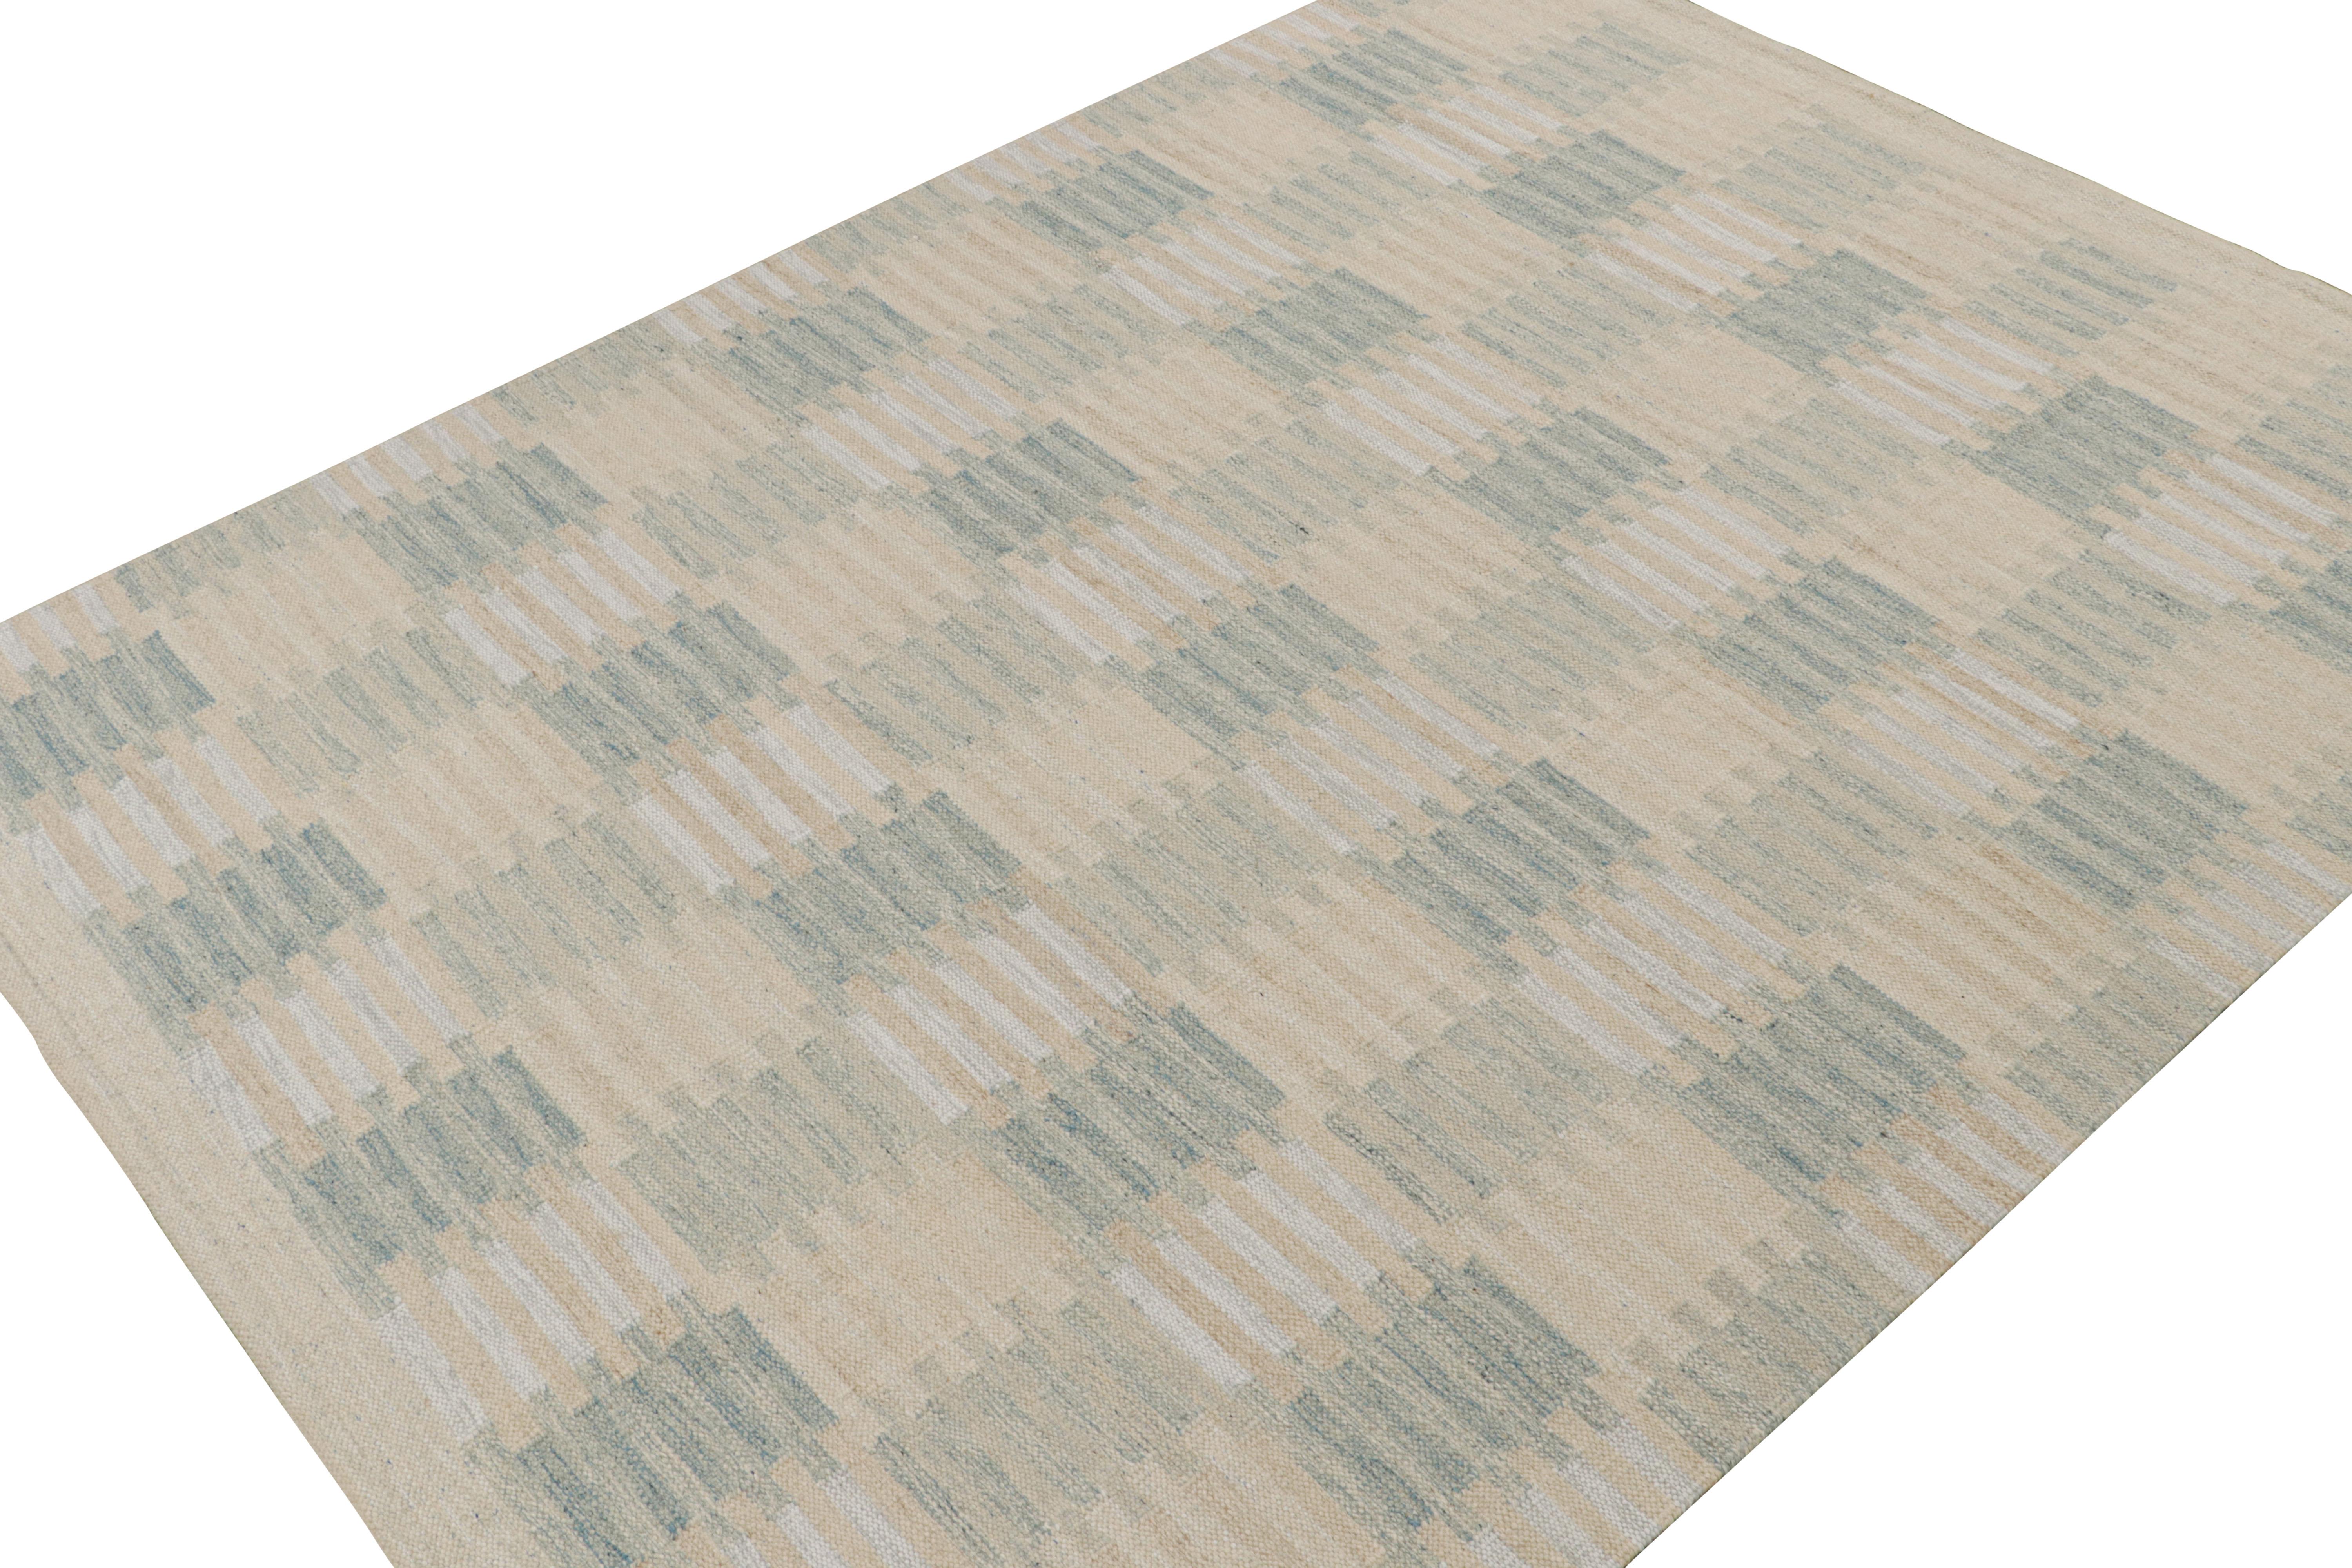 Ein eleganter 9x12 Kelim-Teppich im schwedischen Stil aus unserer preisgekrönten skandinavischen Flachgewebe-Kollektion. Handgewebt aus Wolle, Baumwolle und ungefärbtem Naturgarn.

Über das Design: 

Dieser Teppich besticht durch geometrische Muster